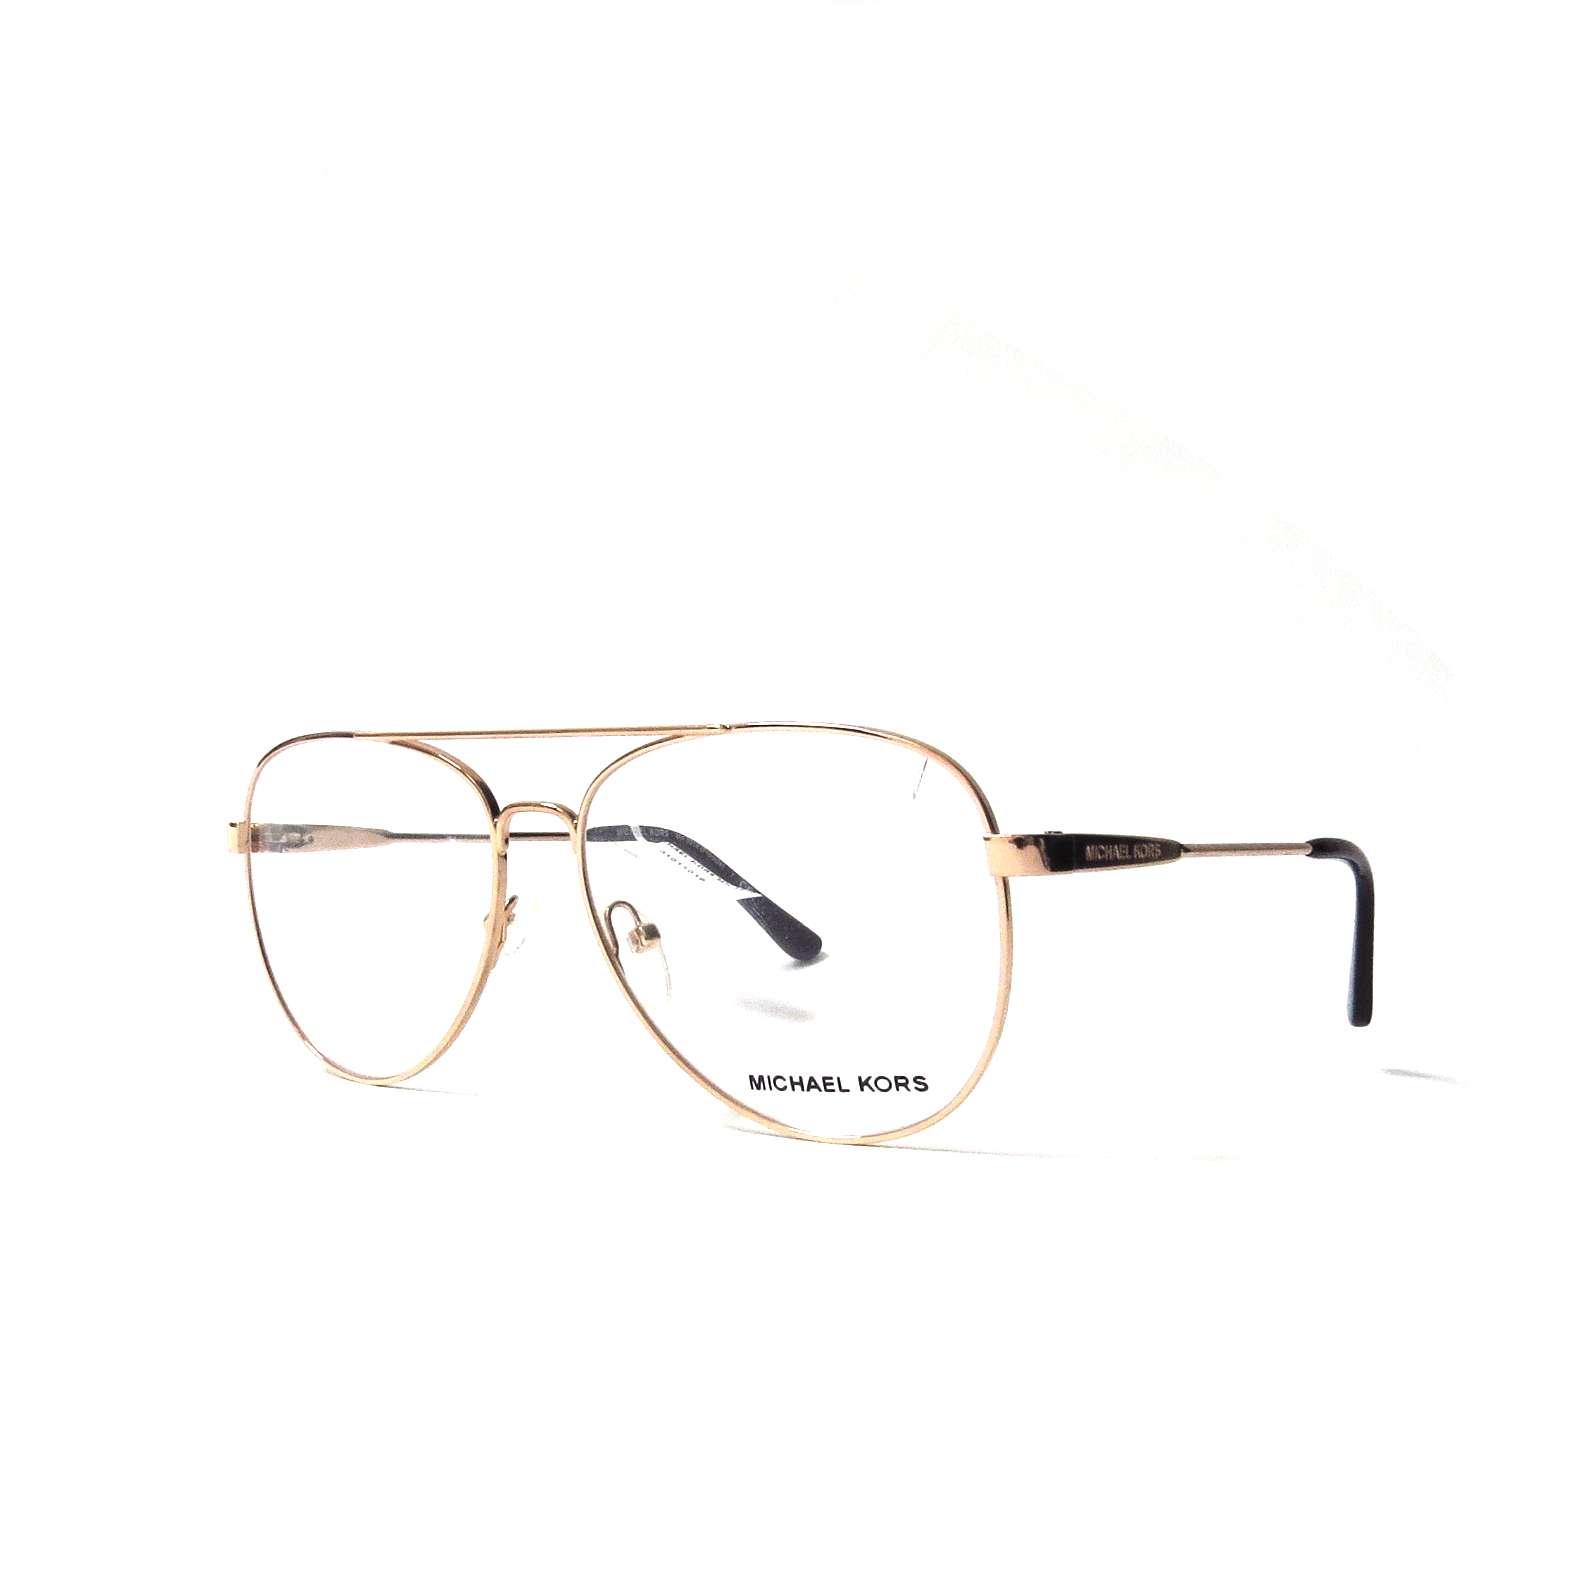 Óptica las gafas | KORS - 3019 - Óptica las gafas